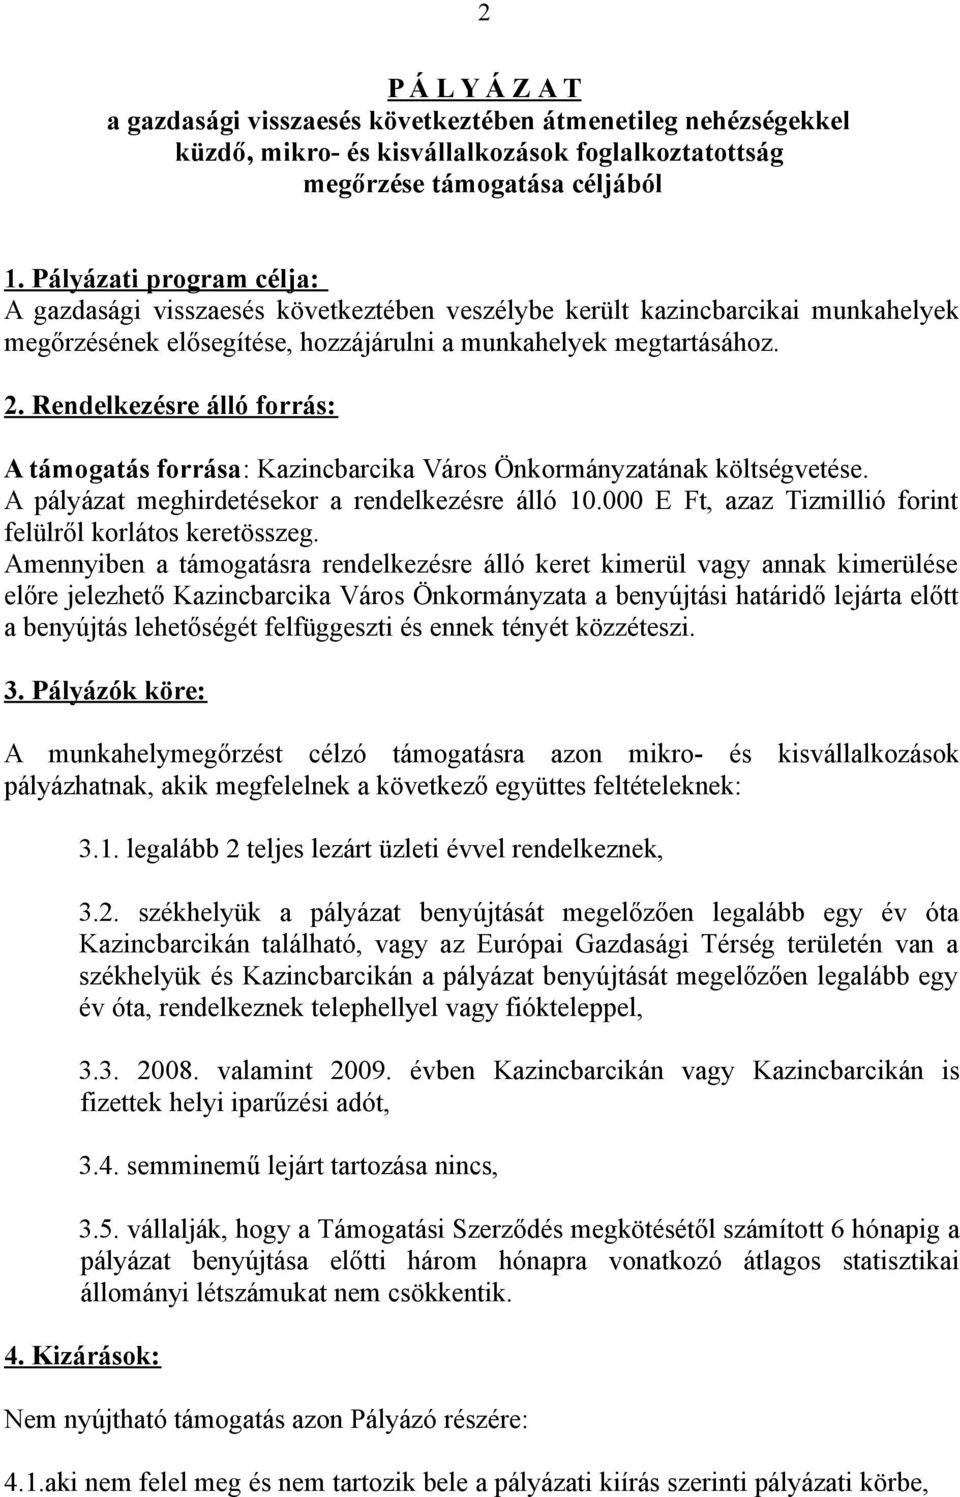 Rendelkezésre álló forrás: A támogatás forrása: Kazincbarcika Város Önkormányzatának költségvetése. A pályázat meghirdetésekor a rendelkezésre álló 10.